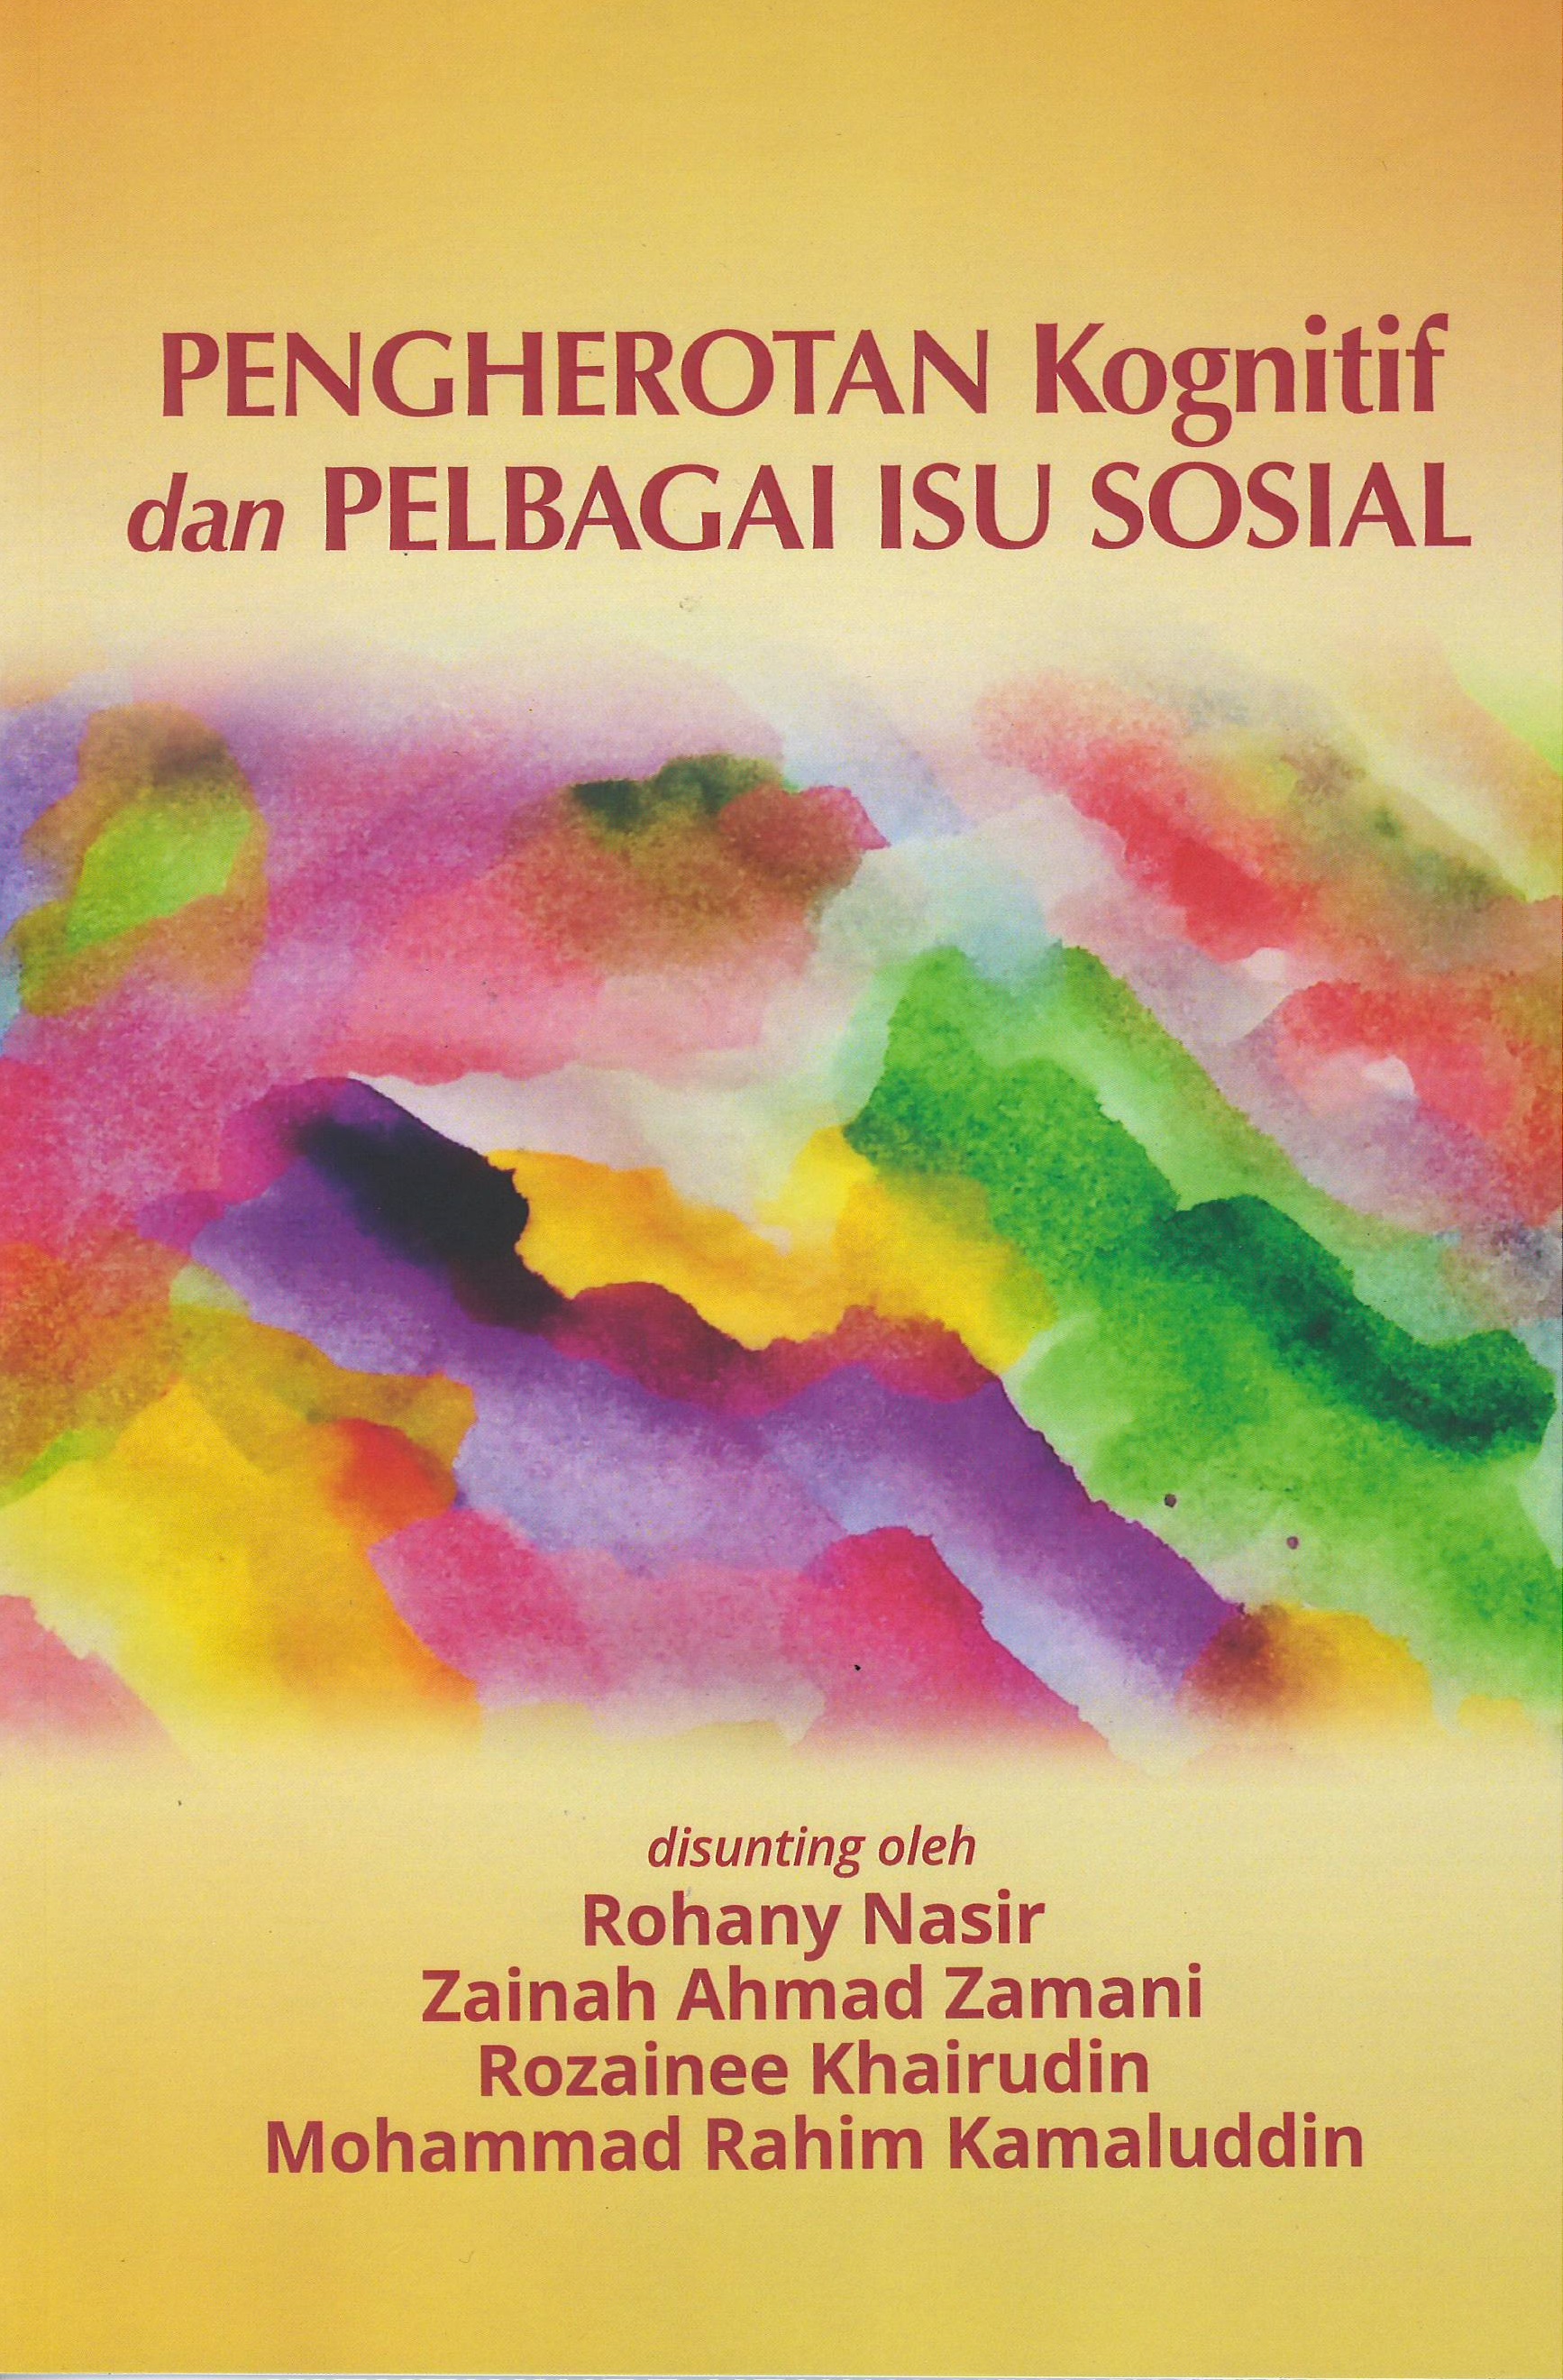 Pengherotan Kognitif dan Pelbagai Isu Sosial - Malaysia's Online Bookstore"